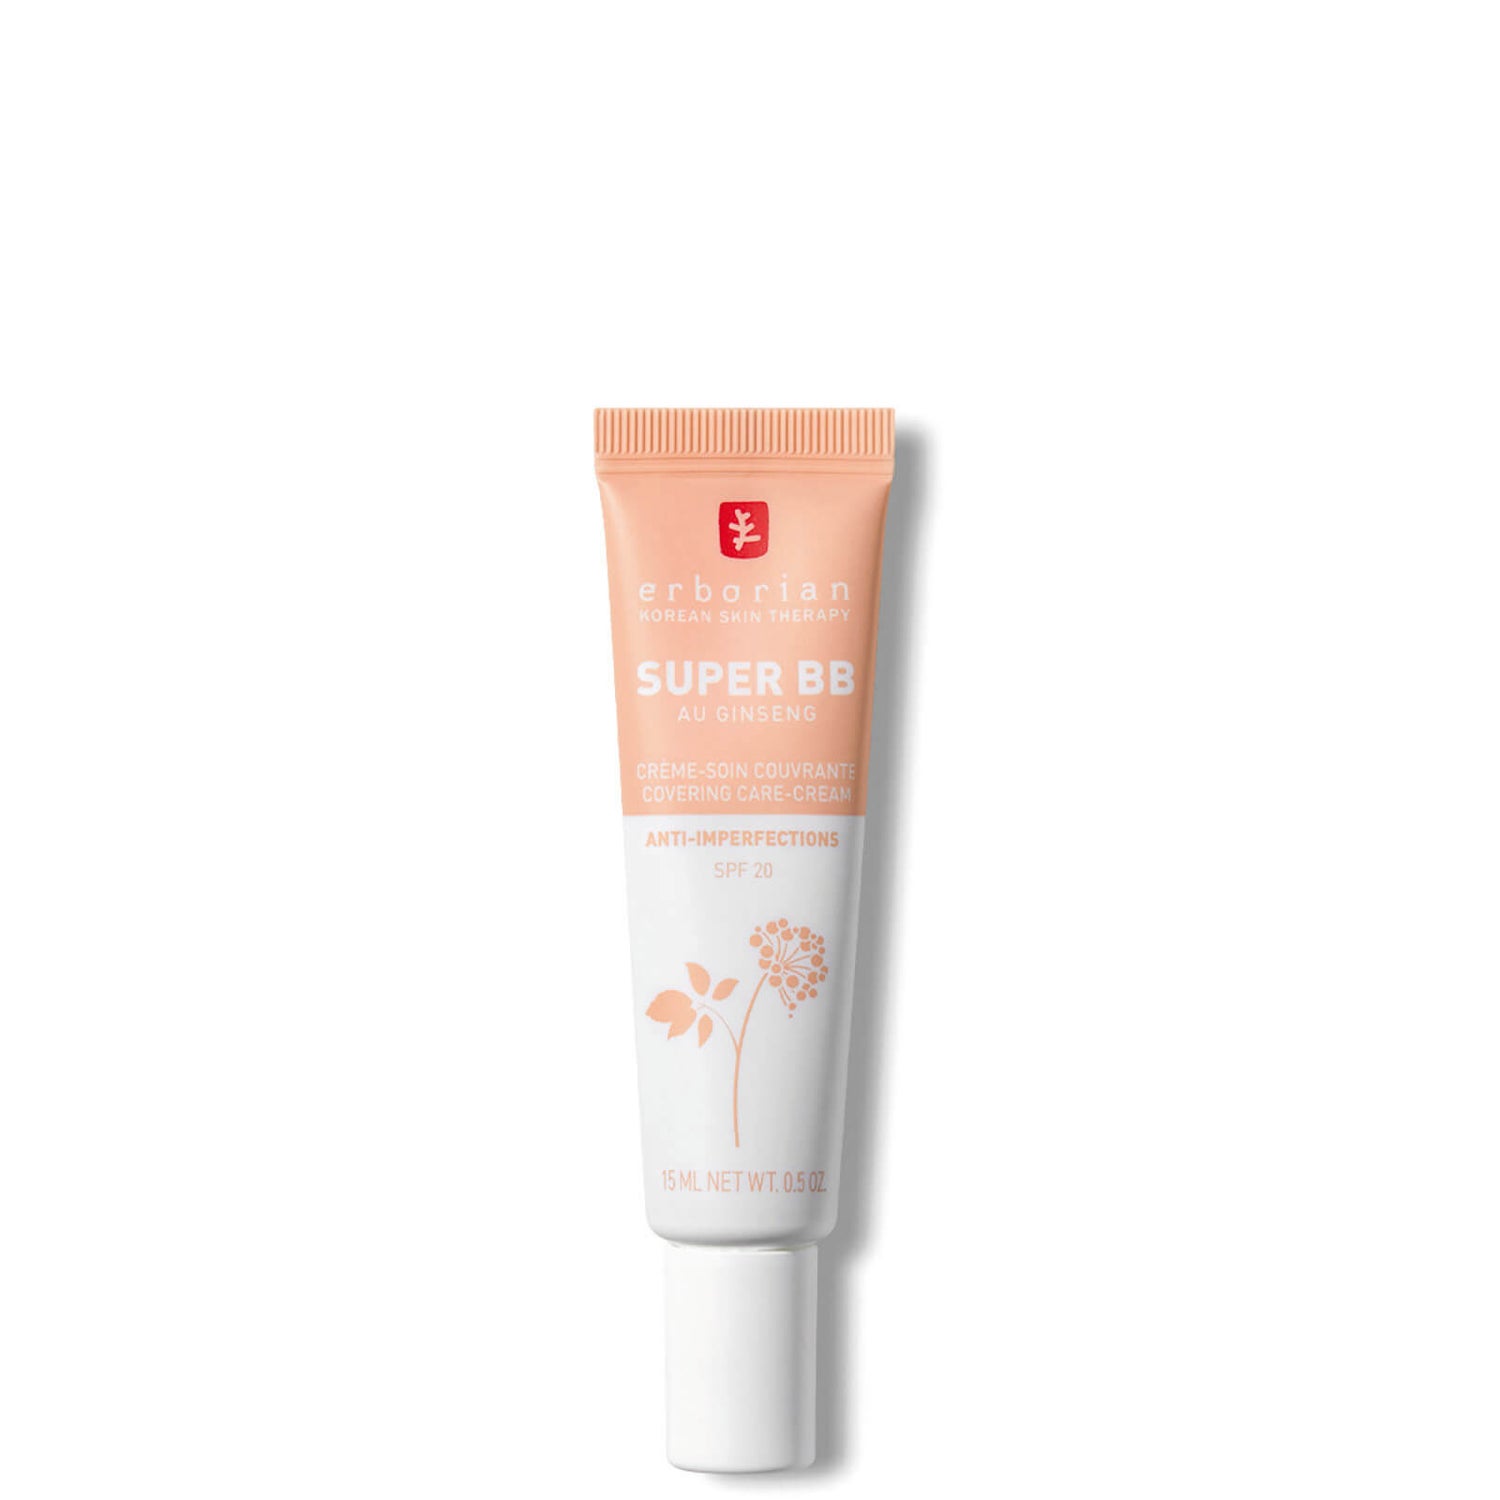 Super BB Cream 15ml - Fondotinta correttivo ad alta copertura SPF20 per pelli non uniformi (varie tonalità)